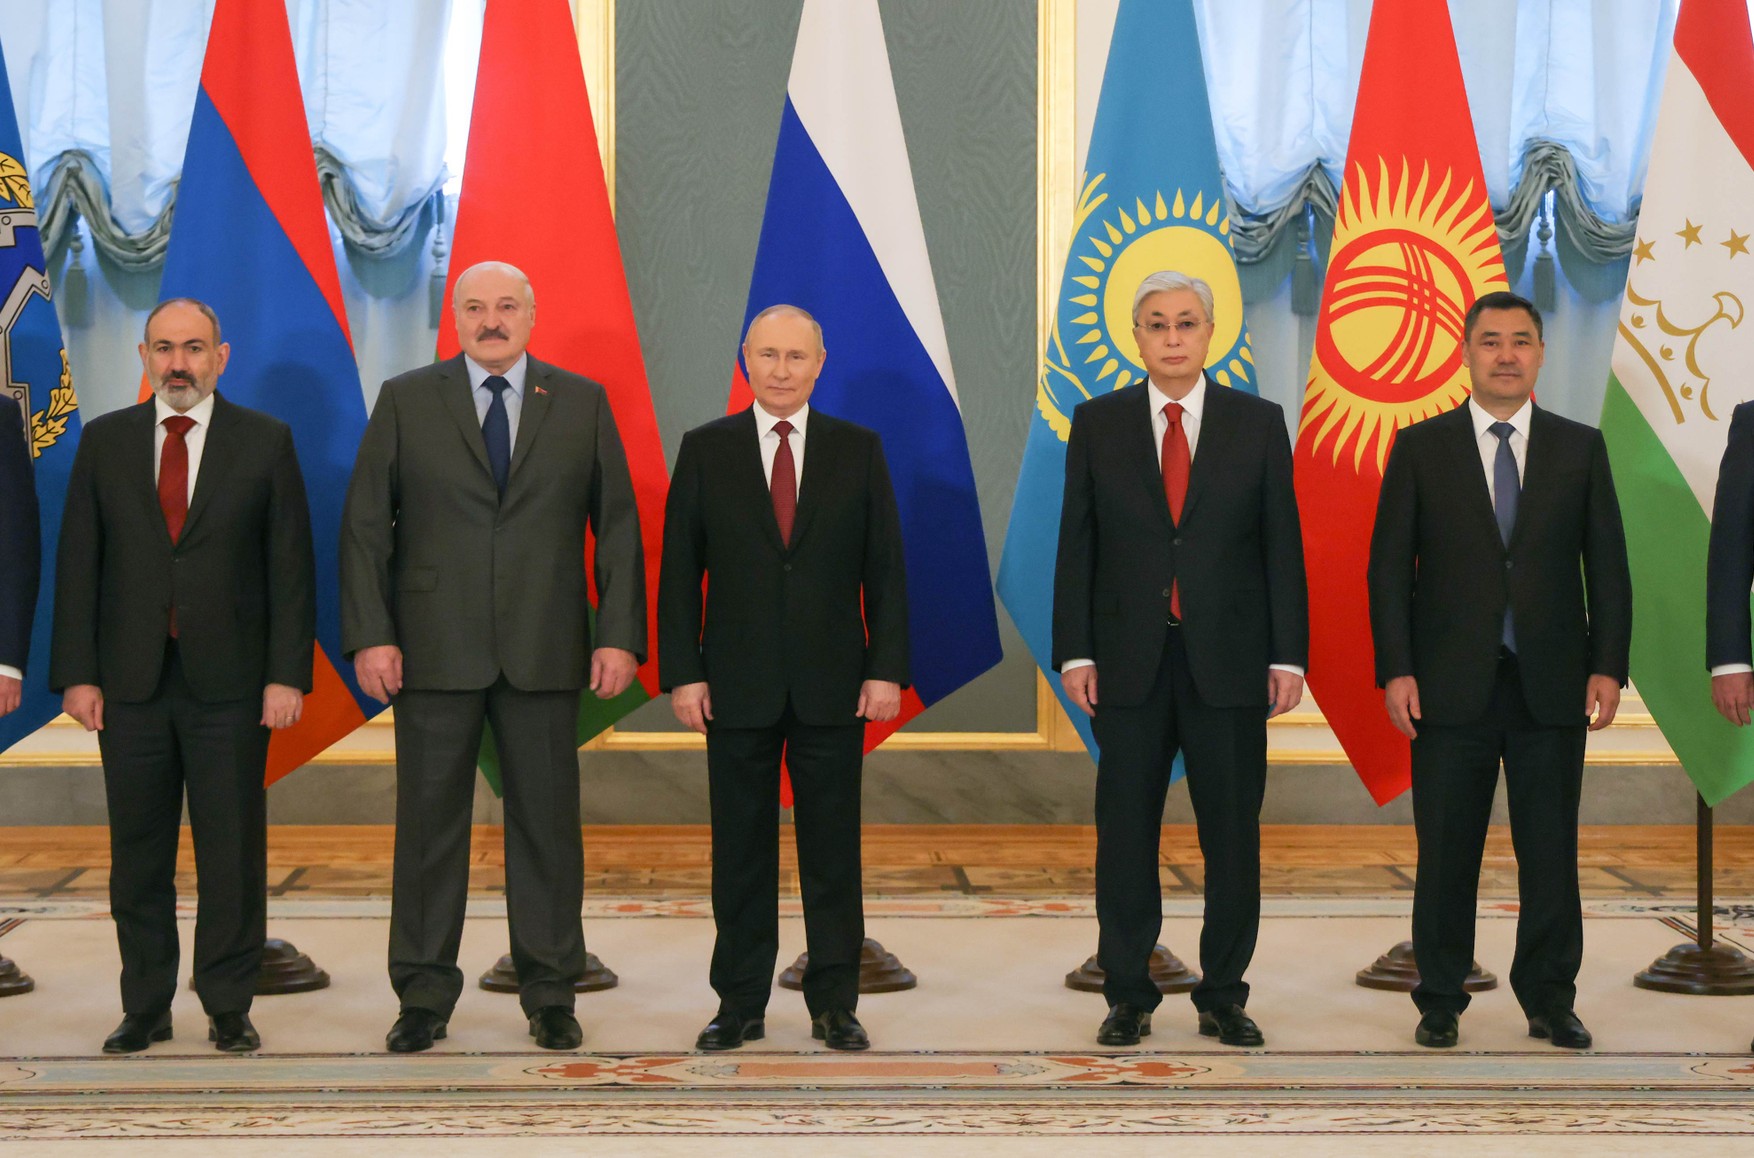 «Лукашенко дал понять: Беларусь будет использовать ОДКБ для противостояния с Западом». Политолог Аркадий Дубнов об итогах саммита в Ереване